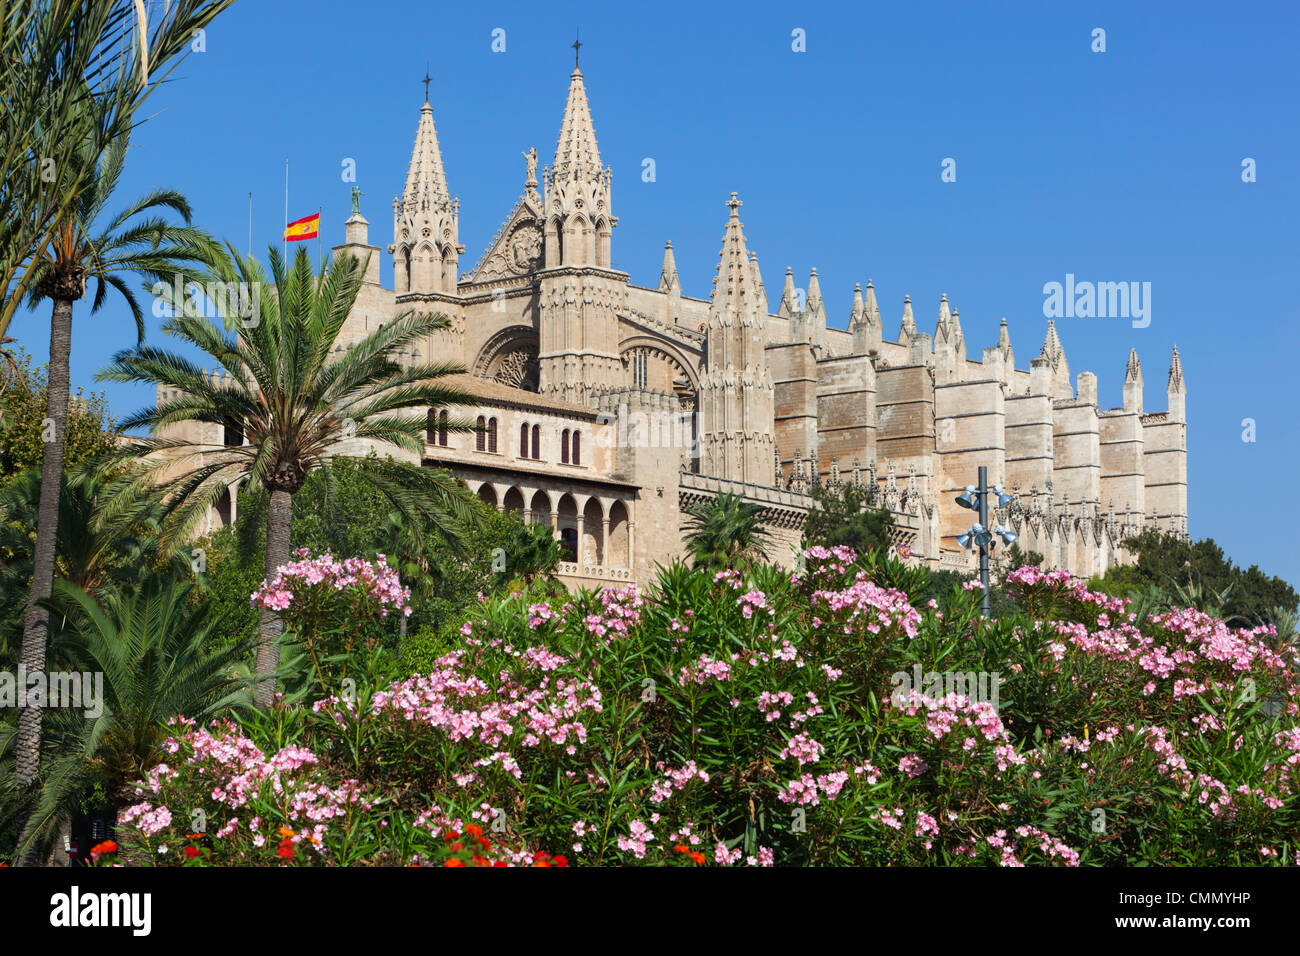 La cattedrale di Palma (La Seu), Palma de Mallorca, Mallorca (La Maiorca, isole Baleari, Spagna, Mediterraneo, Europa Foto Stock